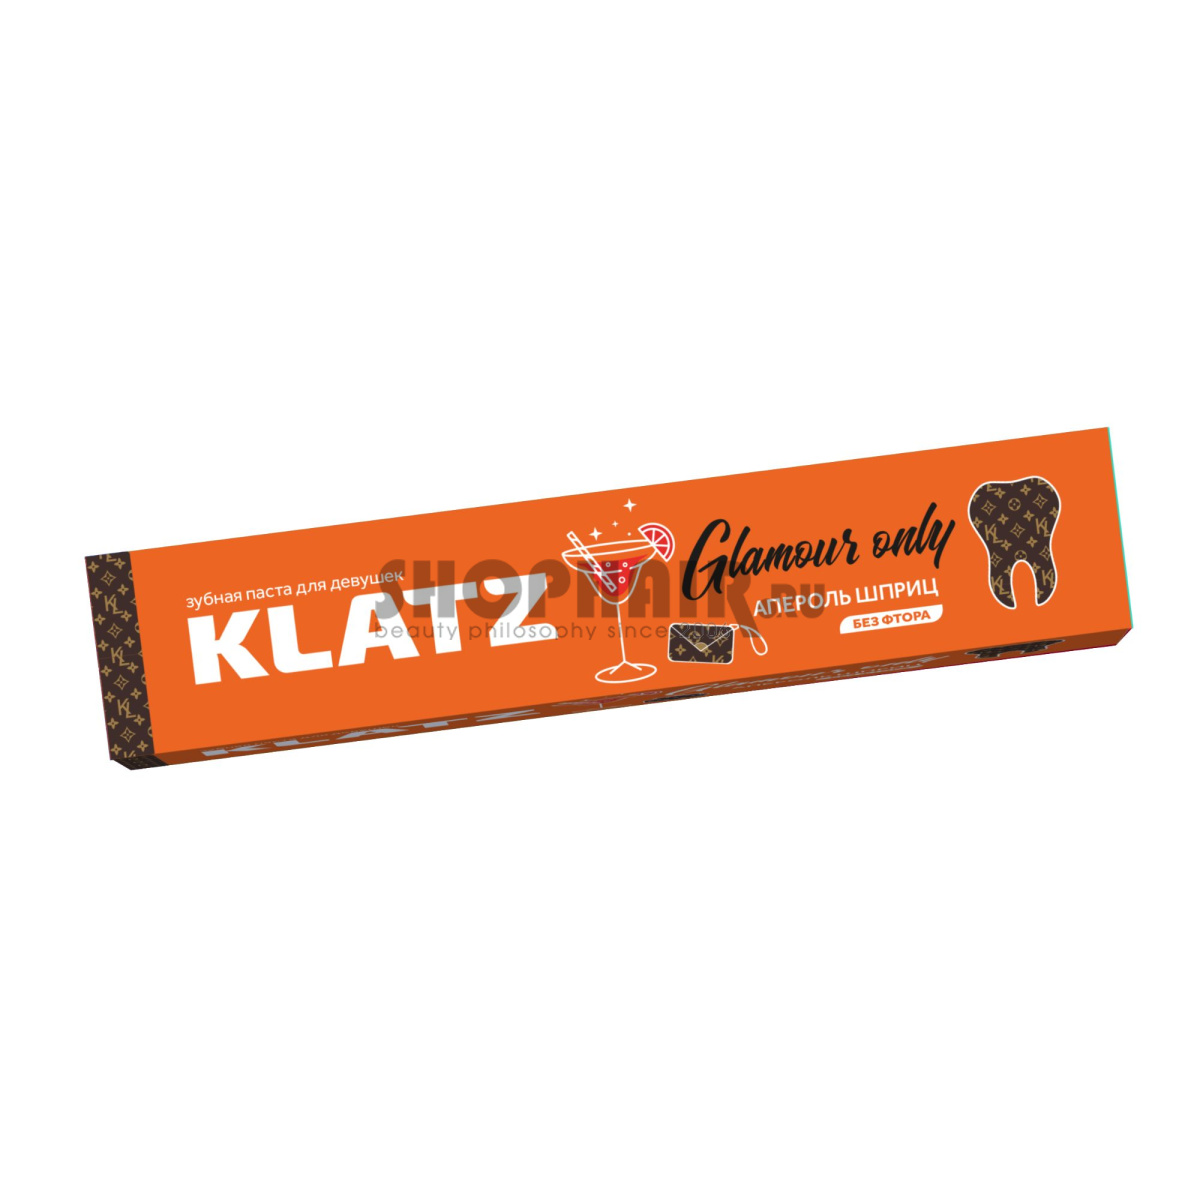 Klatz Glamour Only - Зубная паста для девушек "Апероль шприц" без фтора 75 мл Klatz (Россия) купить по цене 247 руб.